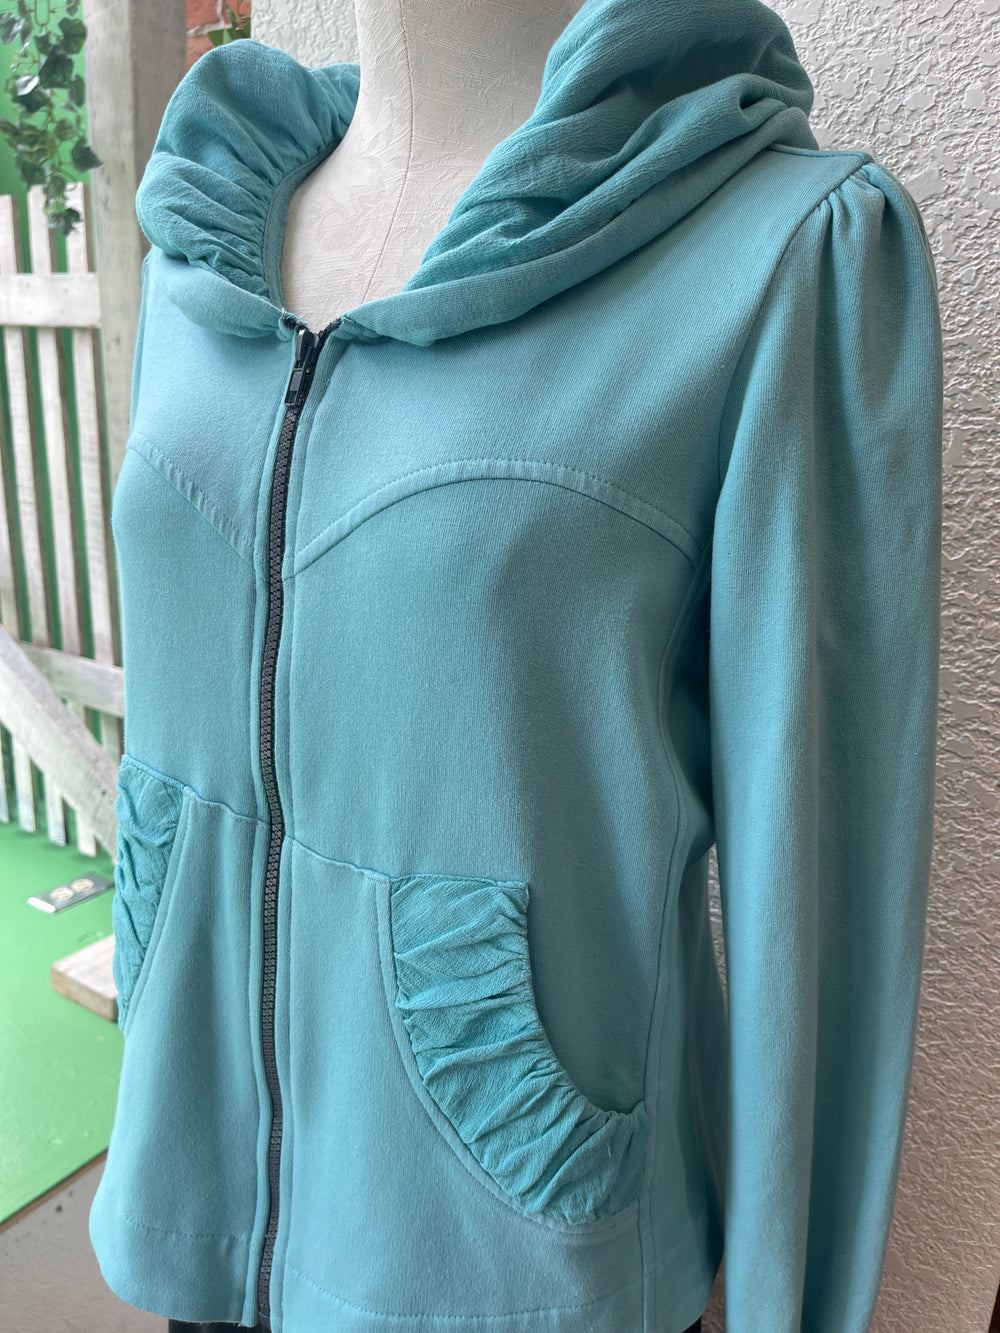 CMC hoodie jacket 3261, short zip (6 colors)